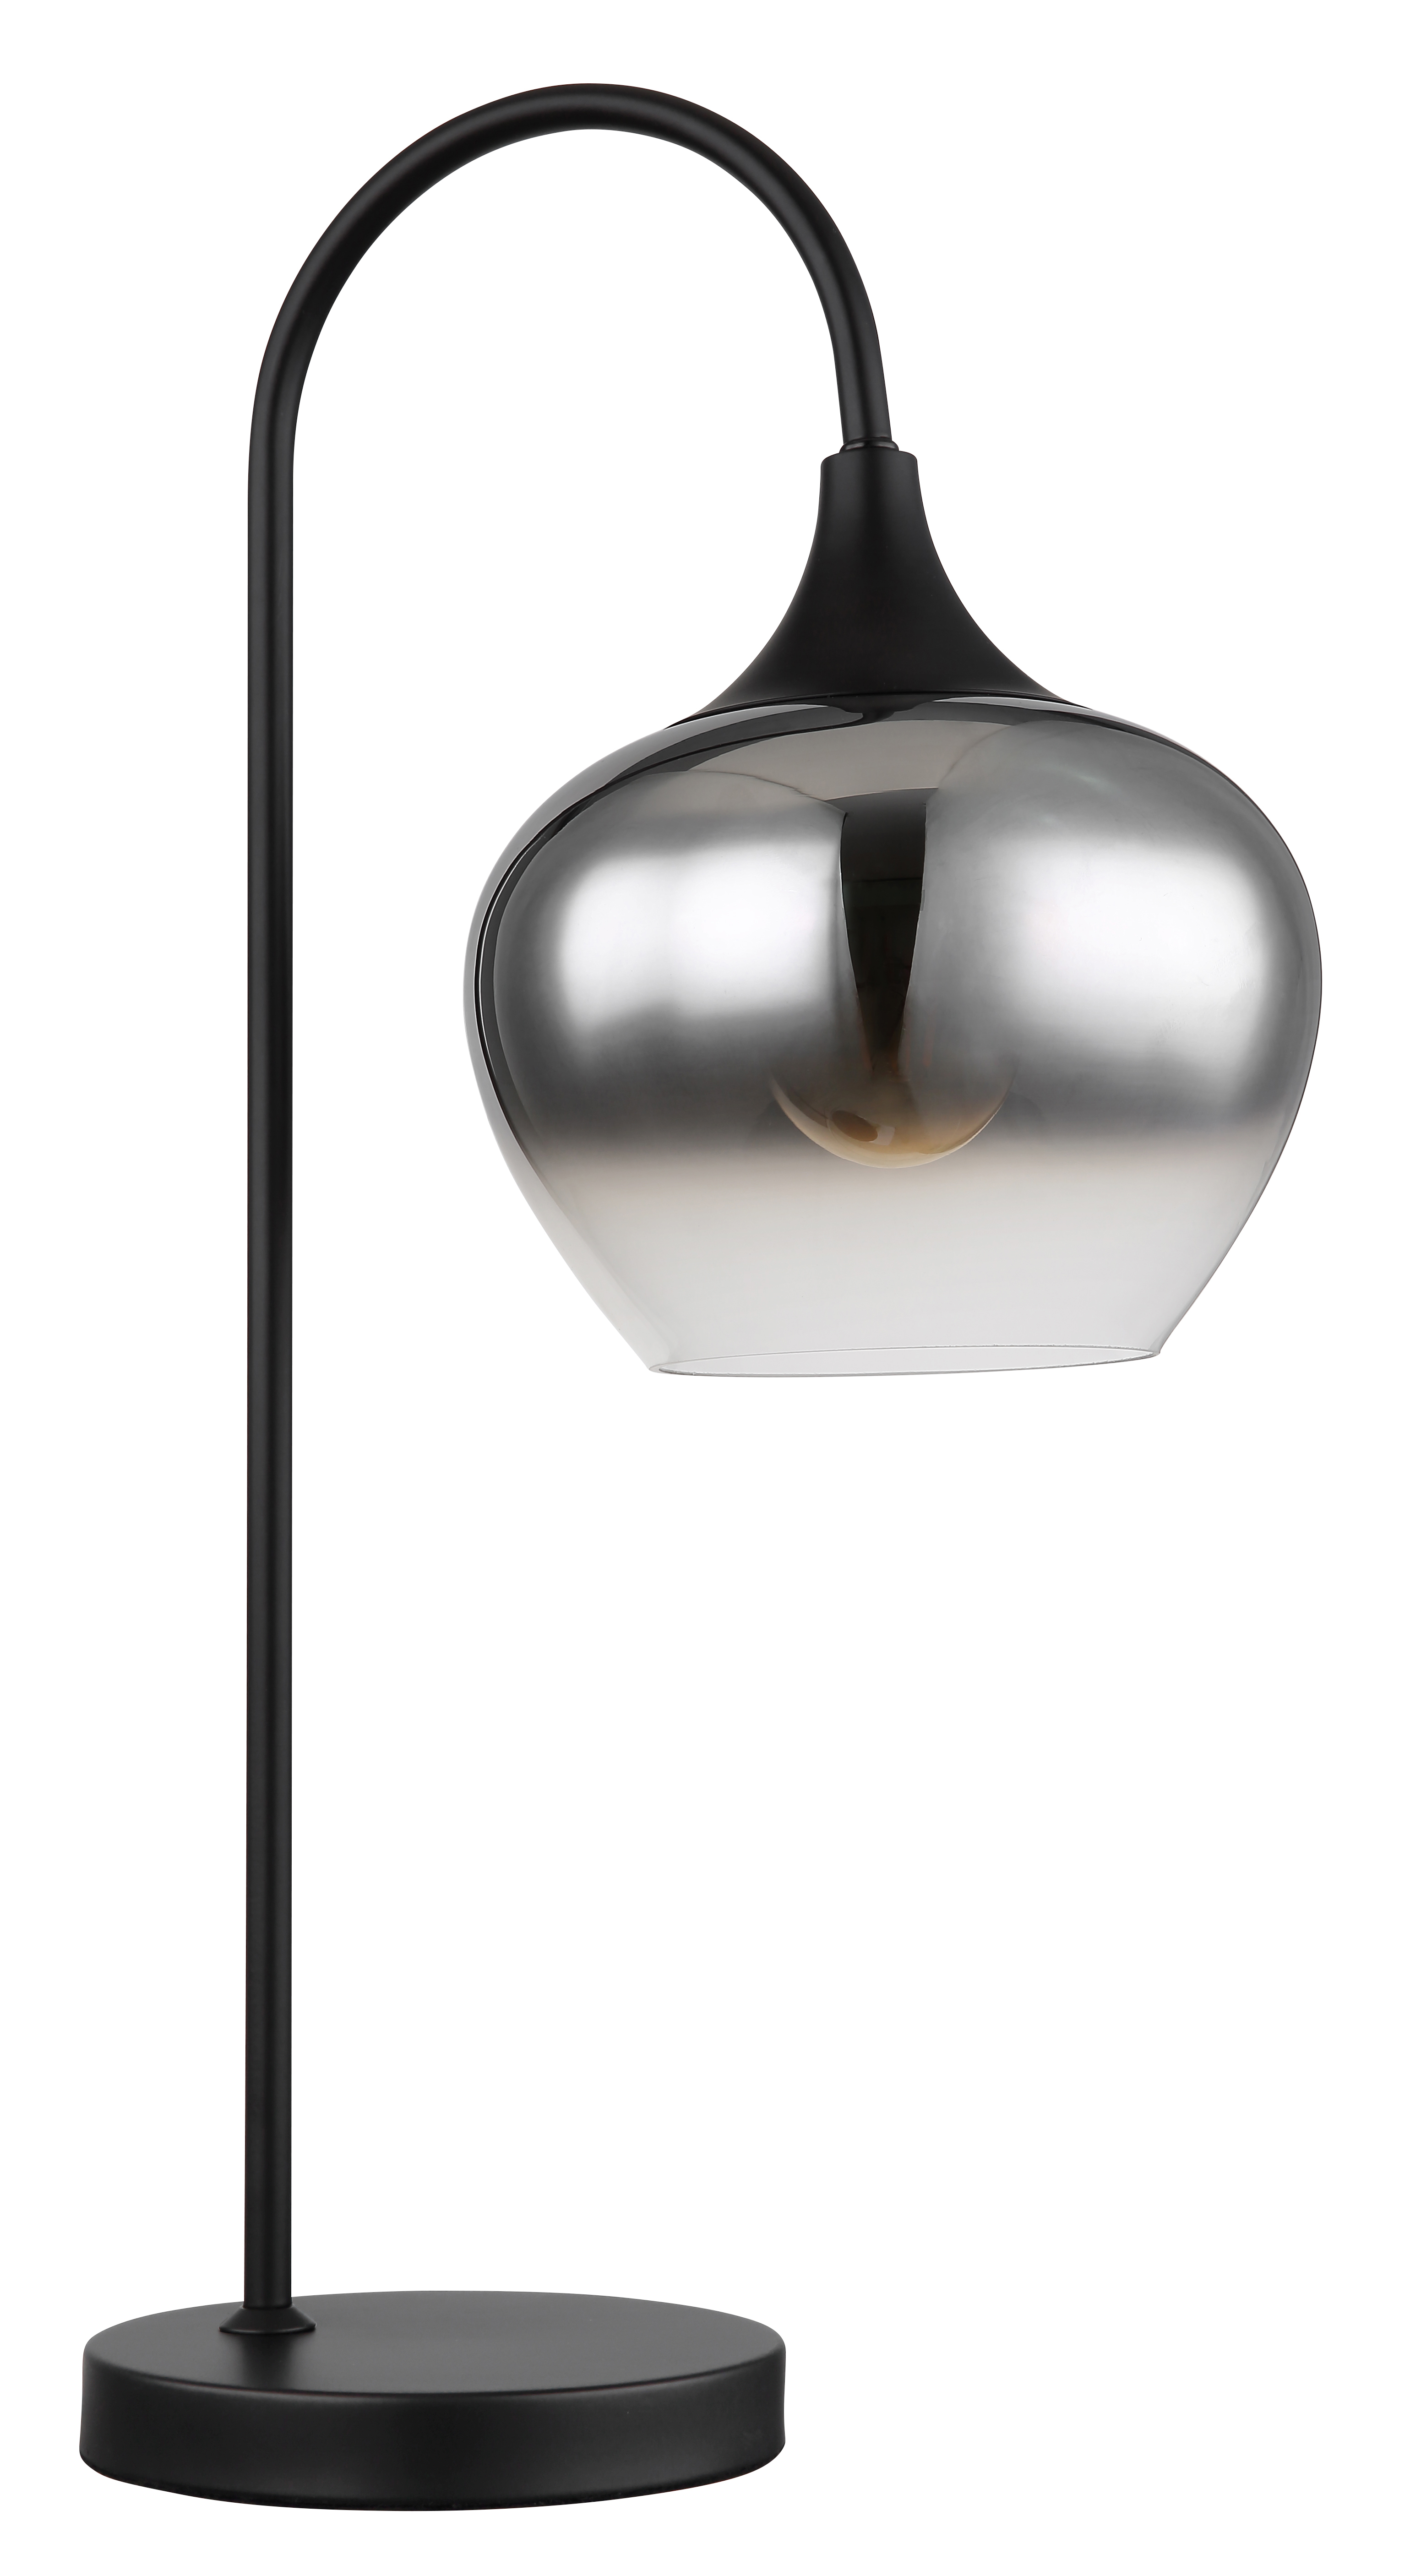 Tischleuchte - Metall schwarz matt - Glas rauchfarben - 15548T